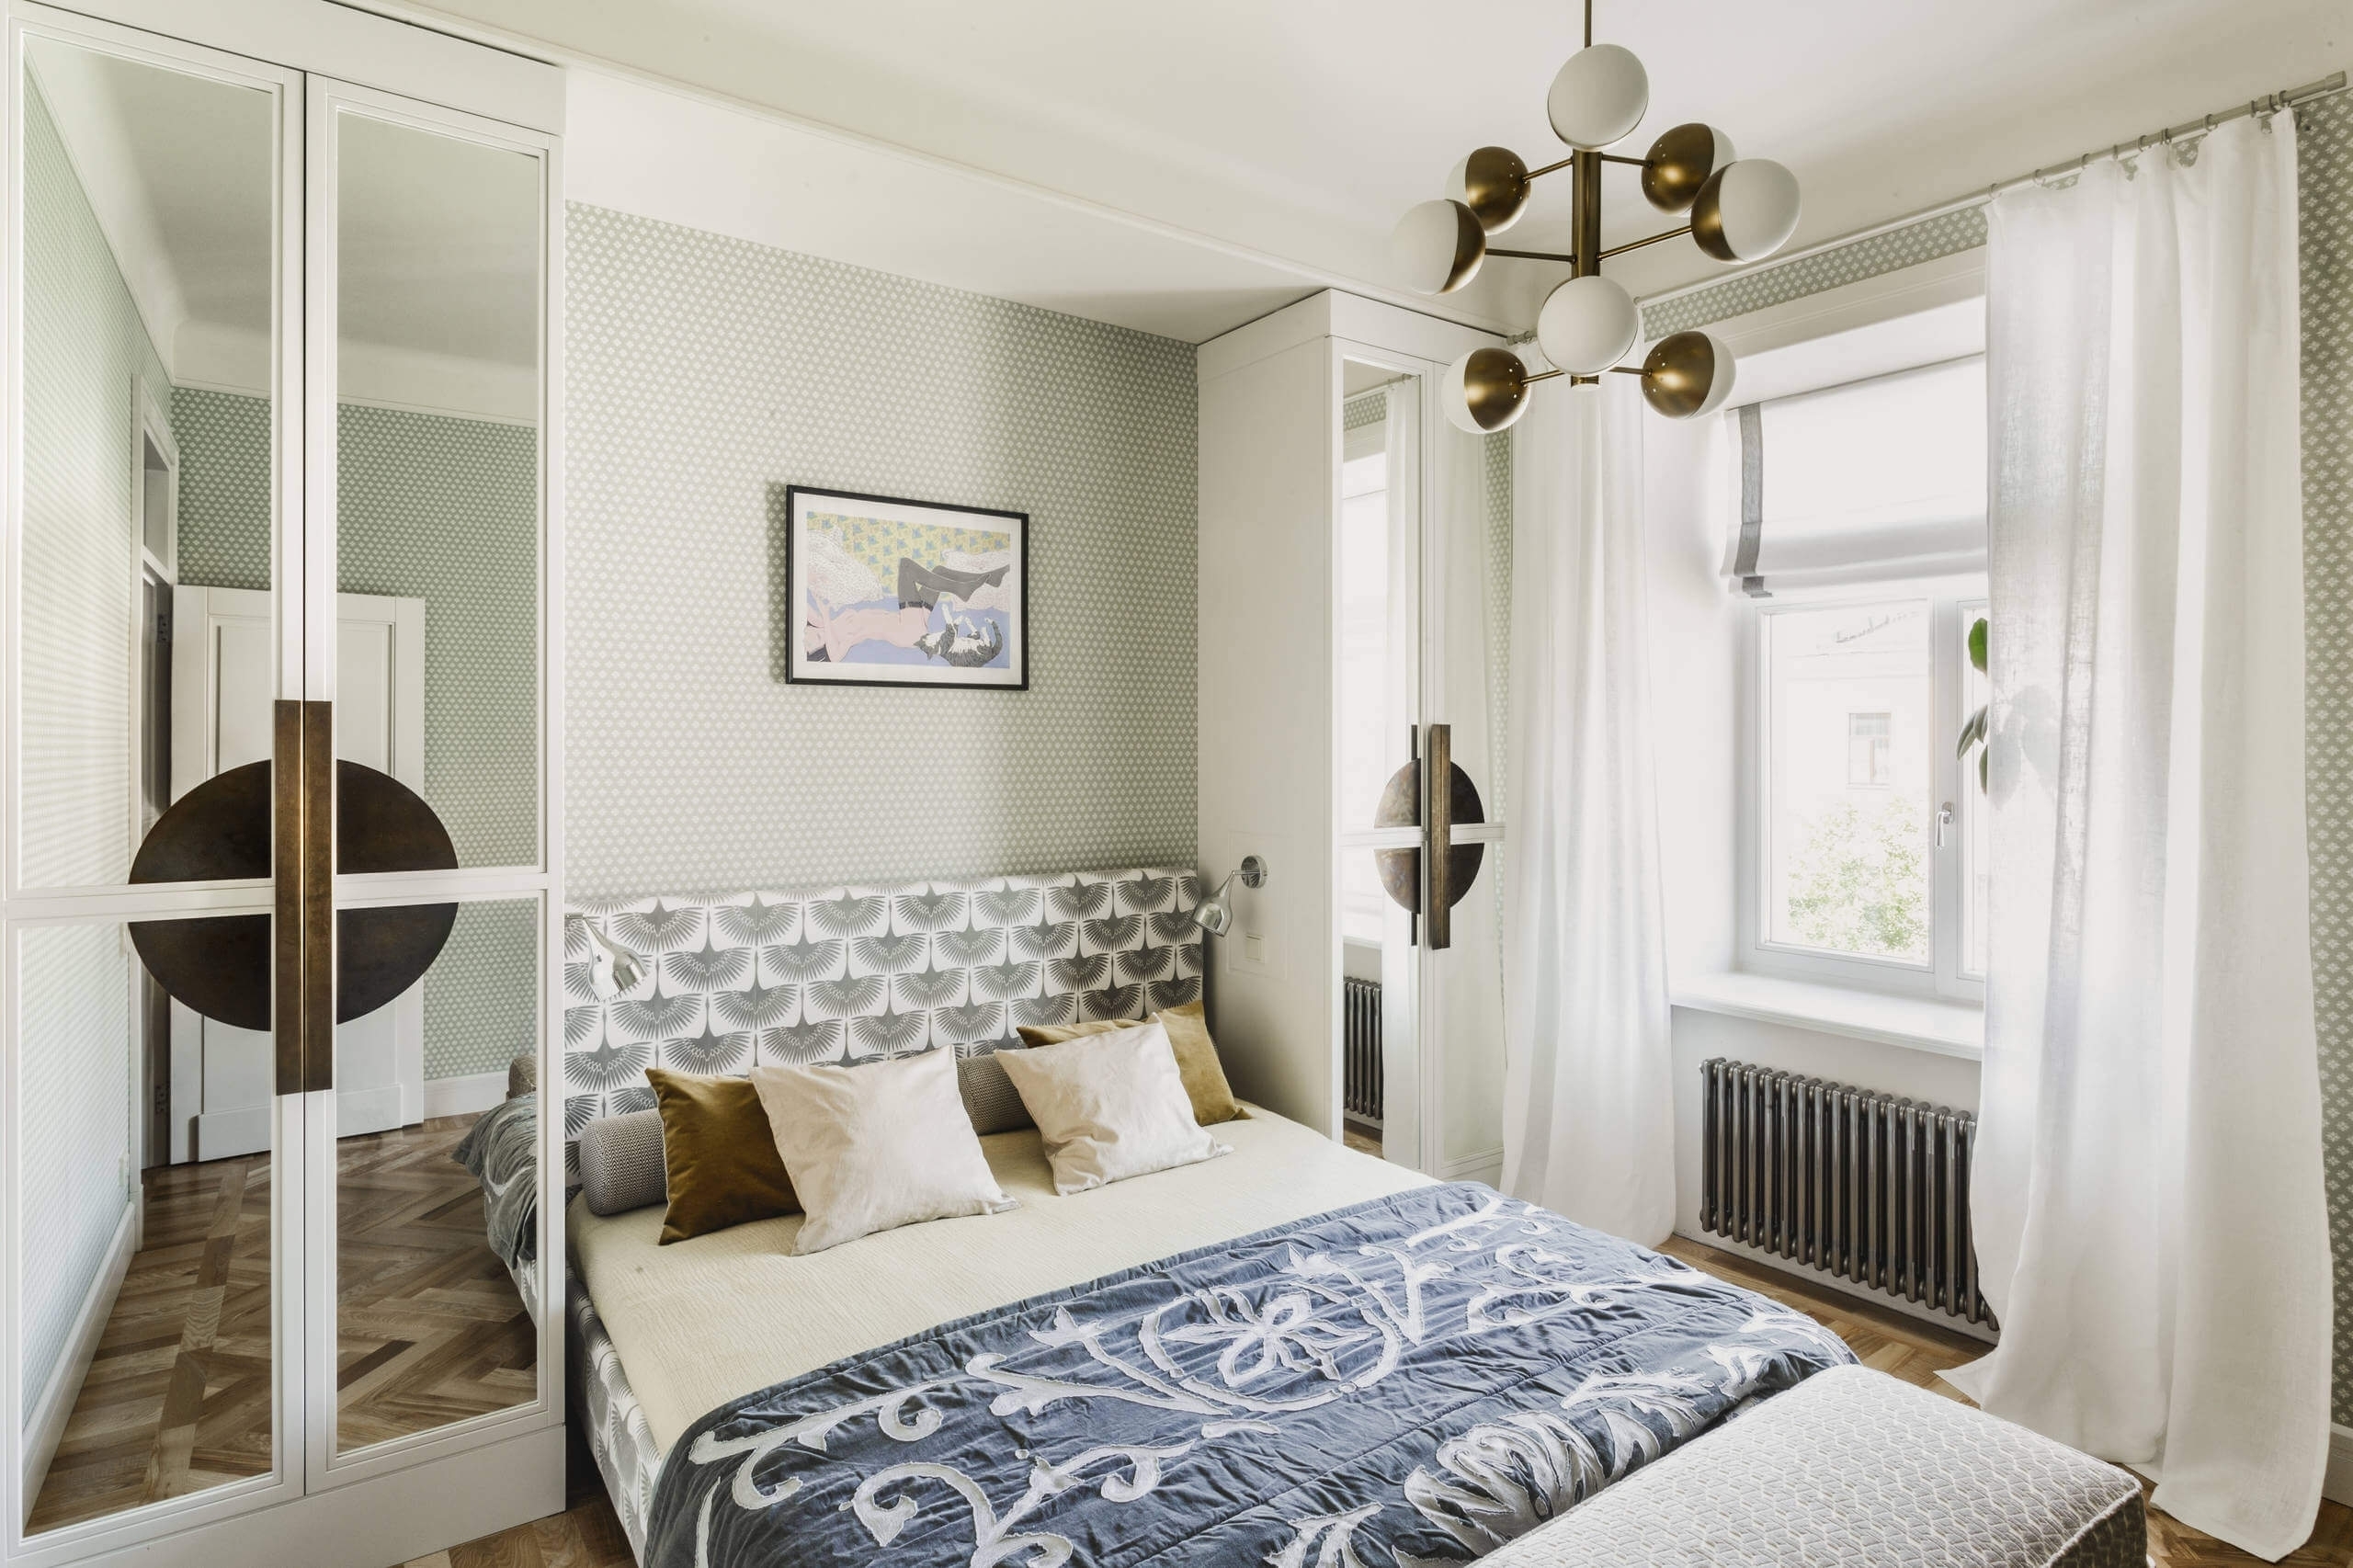 Спальня 9 кв. м.: фото дизайна самых современных идей для маленькой комнаты